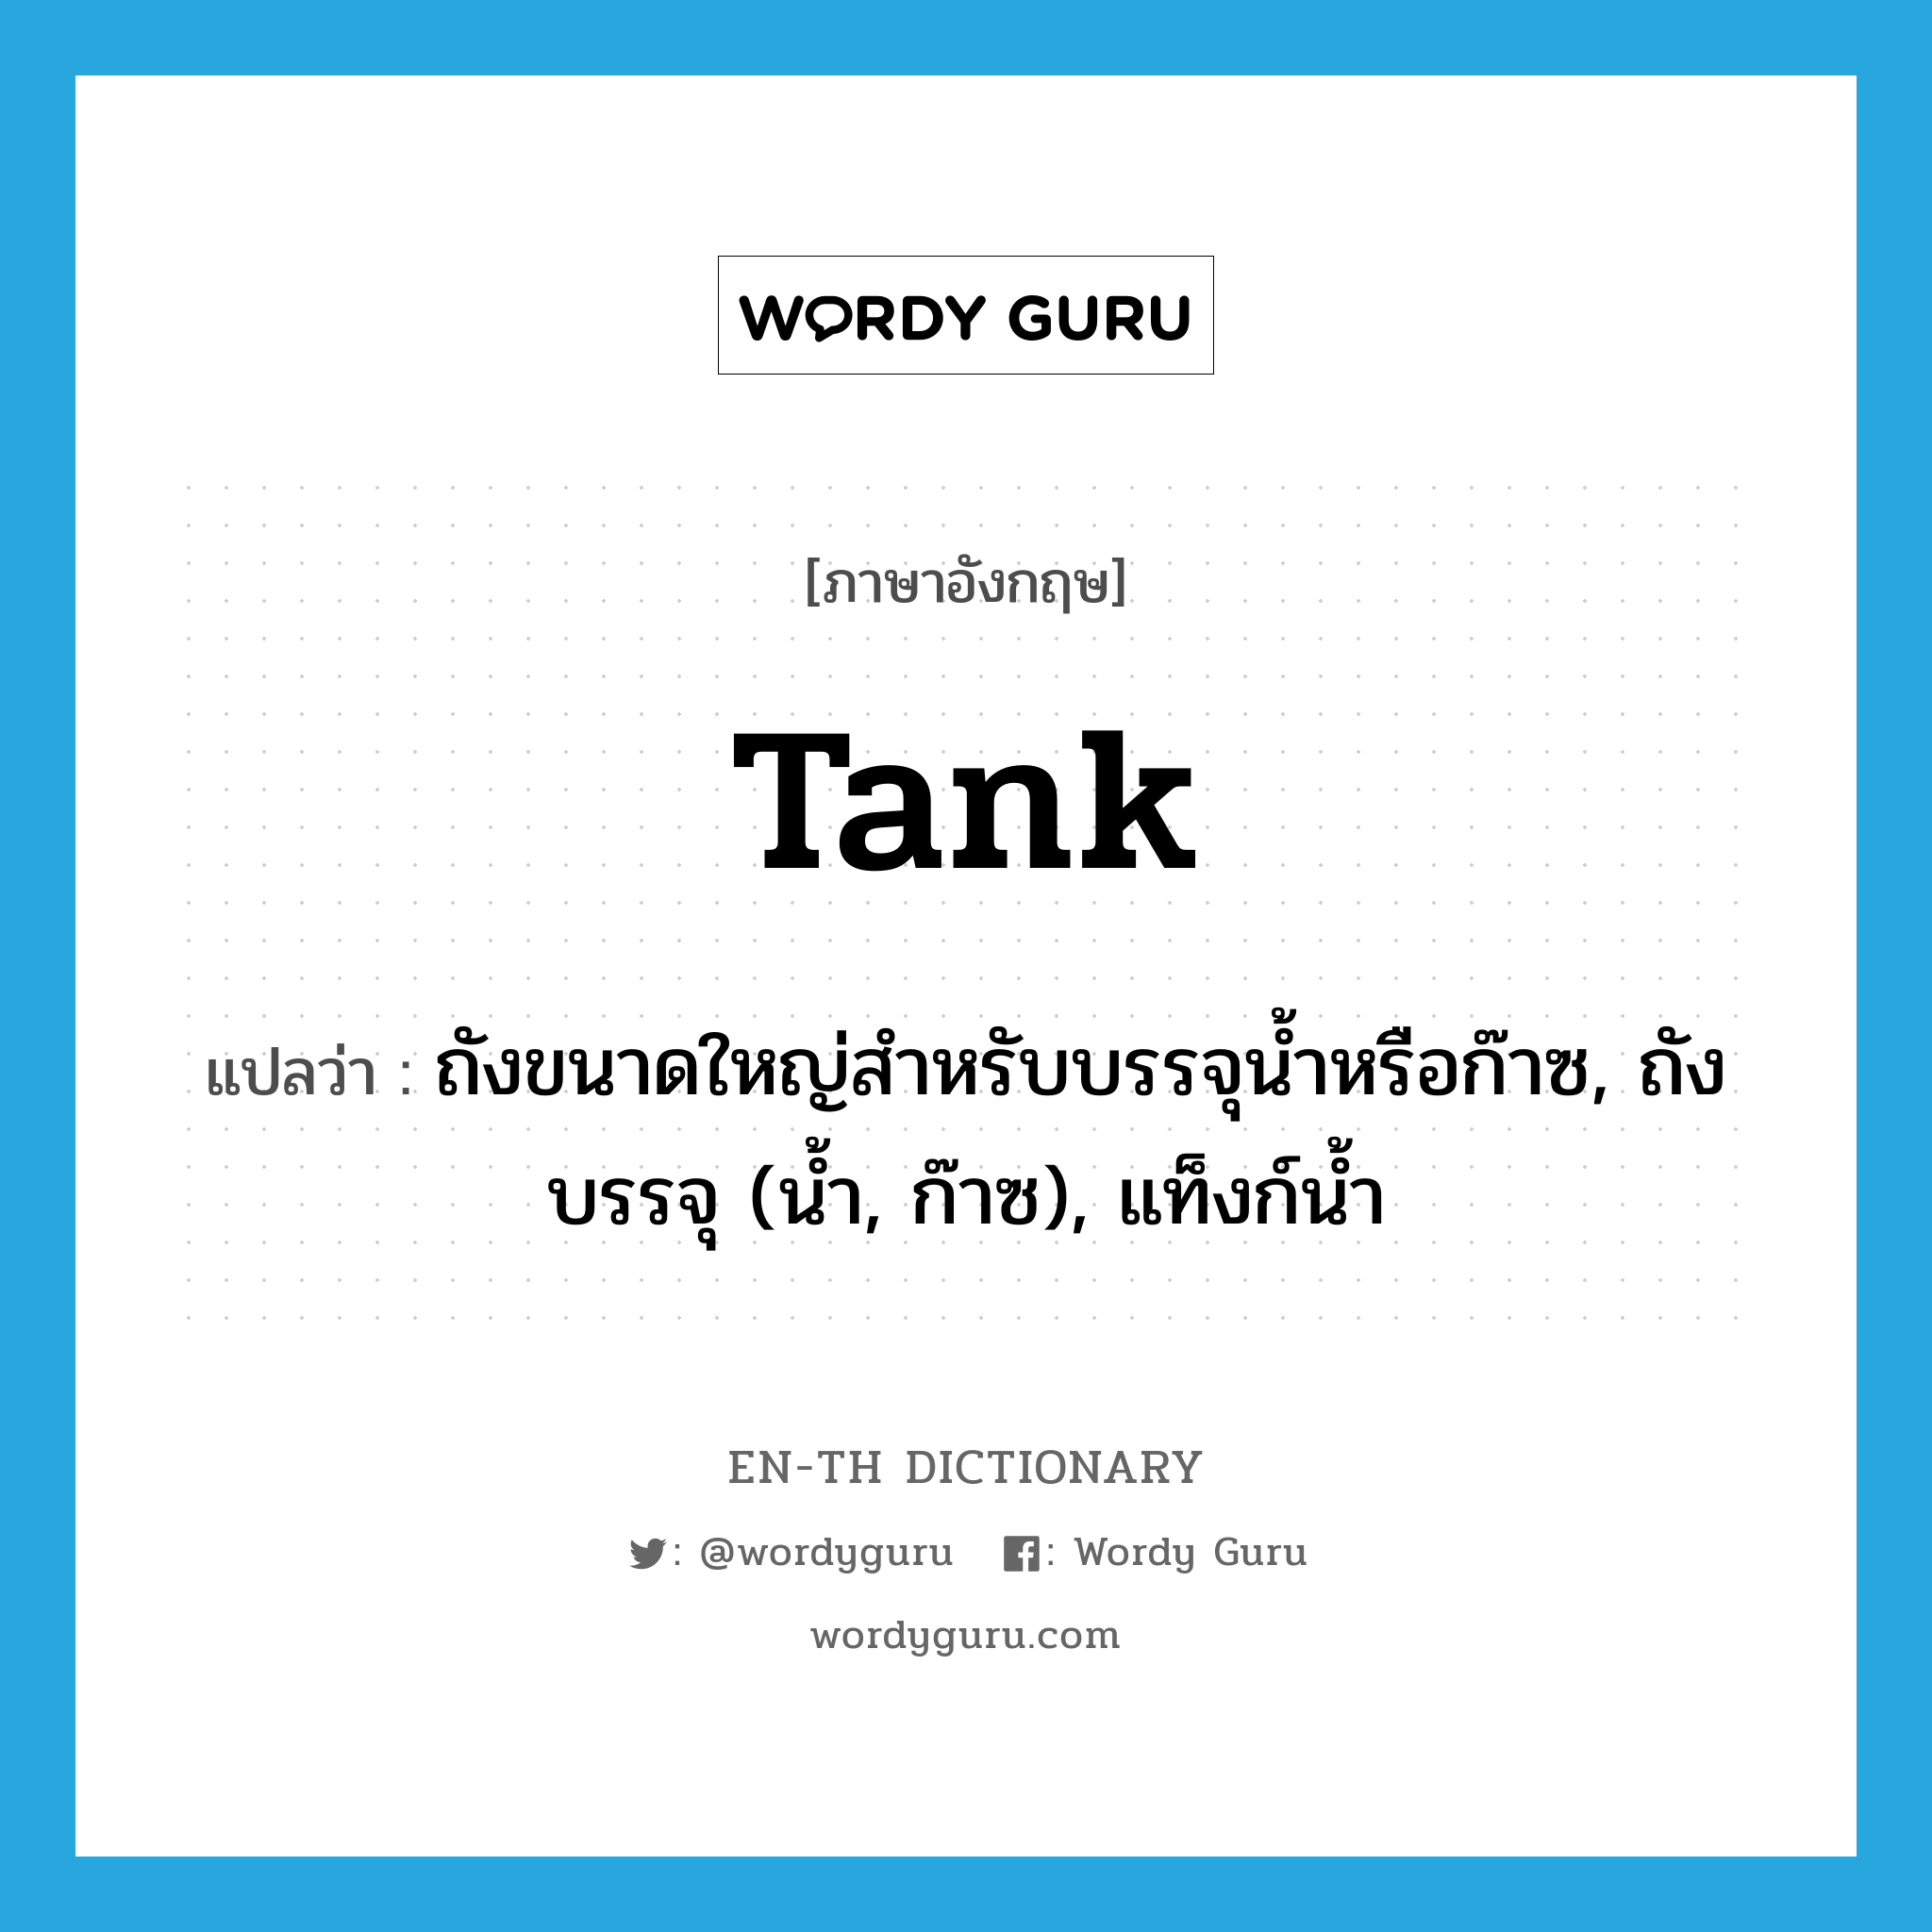 tank แปลว่า?, คำศัพท์ภาษาอังกฤษ tank แปลว่า ถังขนาดใหญ่สำหรับบรรจุน้ำหรือก๊าซ, ถังบรรจุ (น้ำ, ก๊าซ), แท็งก์น้ำ ประเภท N หมวด N